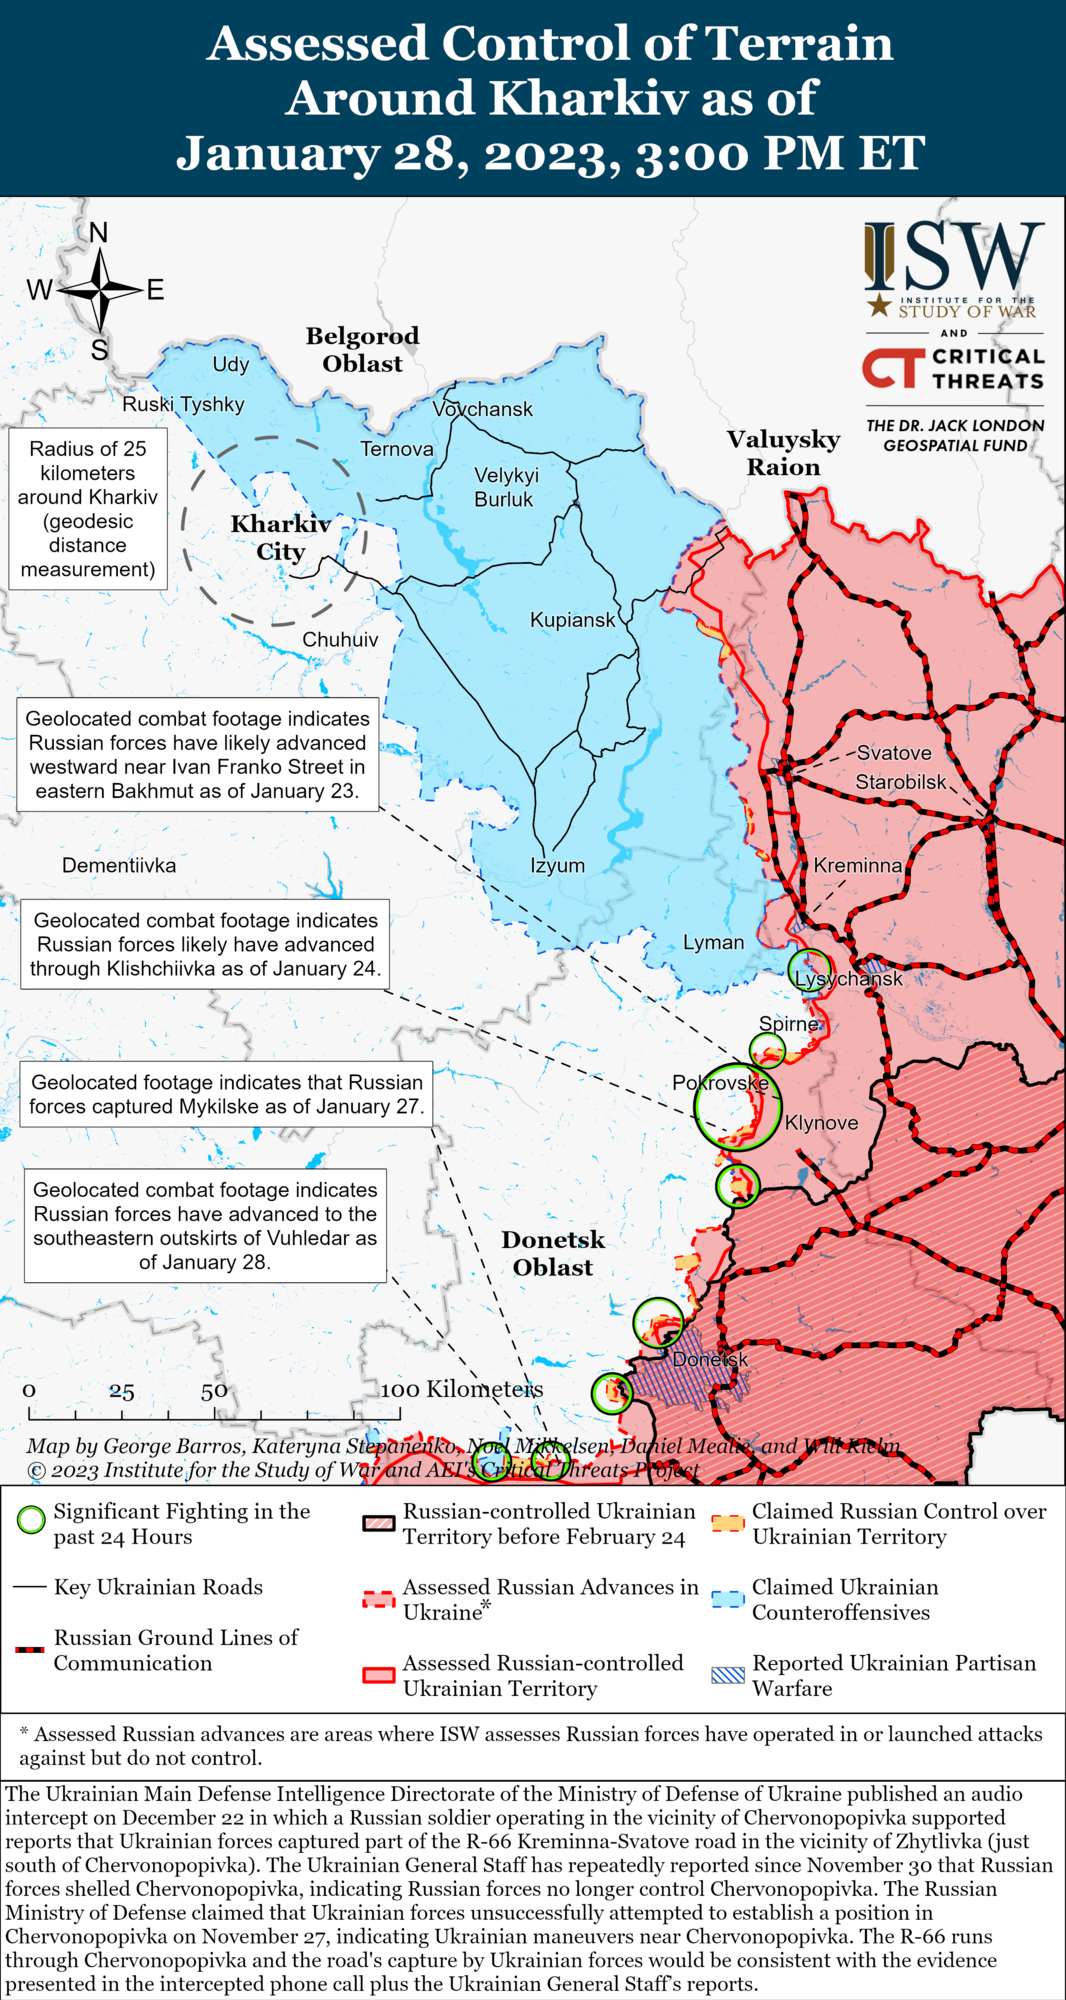 "Вагнерівці" виснажилися під Бахмутом, армія РФ хоче розосередити ЗСУ на Донбасі: в ISW оцінили ситуацію